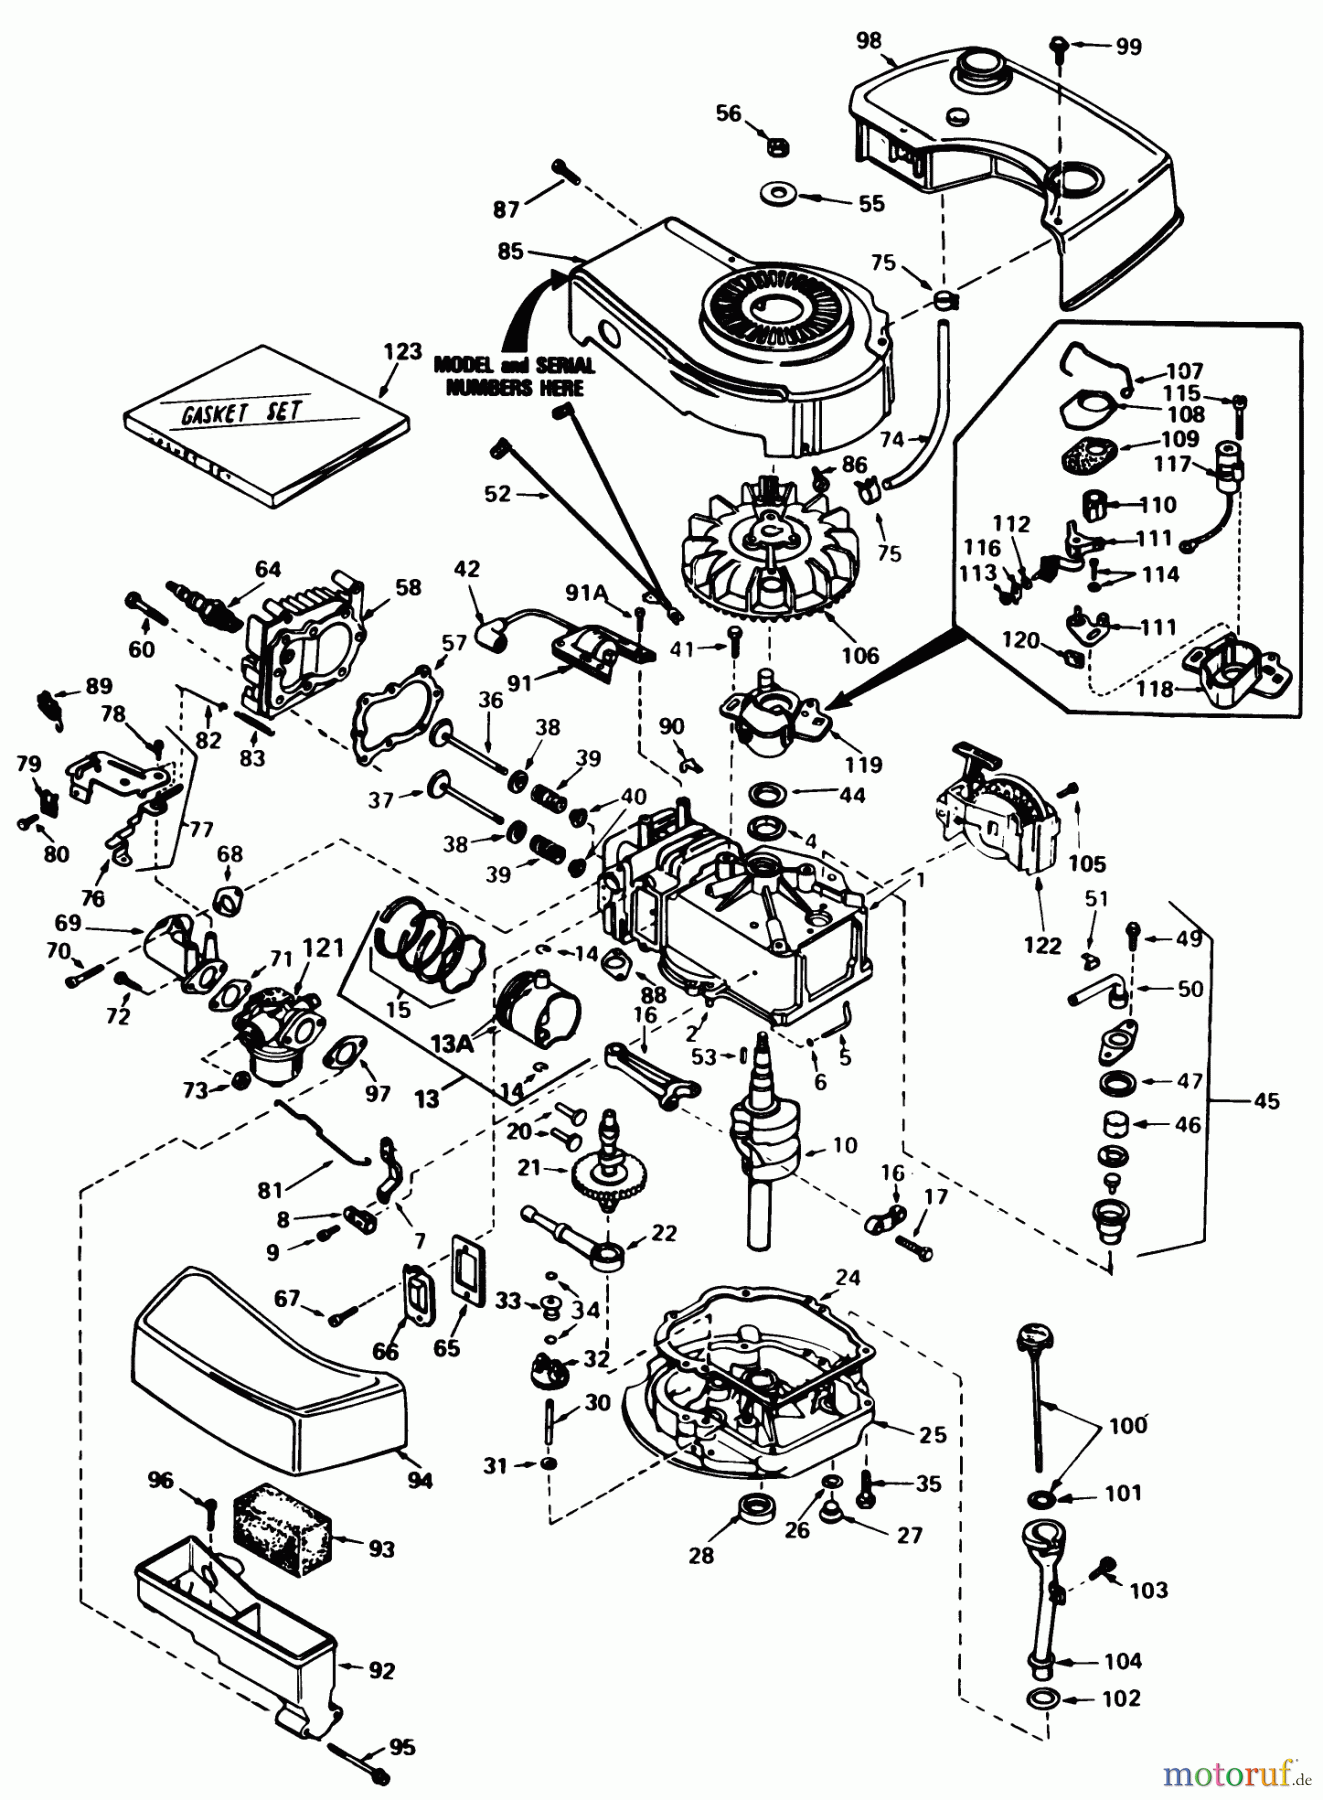  Toro Neu Mowers, Walk-Behind Seite 1 20700 - Toro Lawnmower, 1982 (2000001-2999999) ENGINE TECUMSEH MODEL NO. TNT 100-10079D